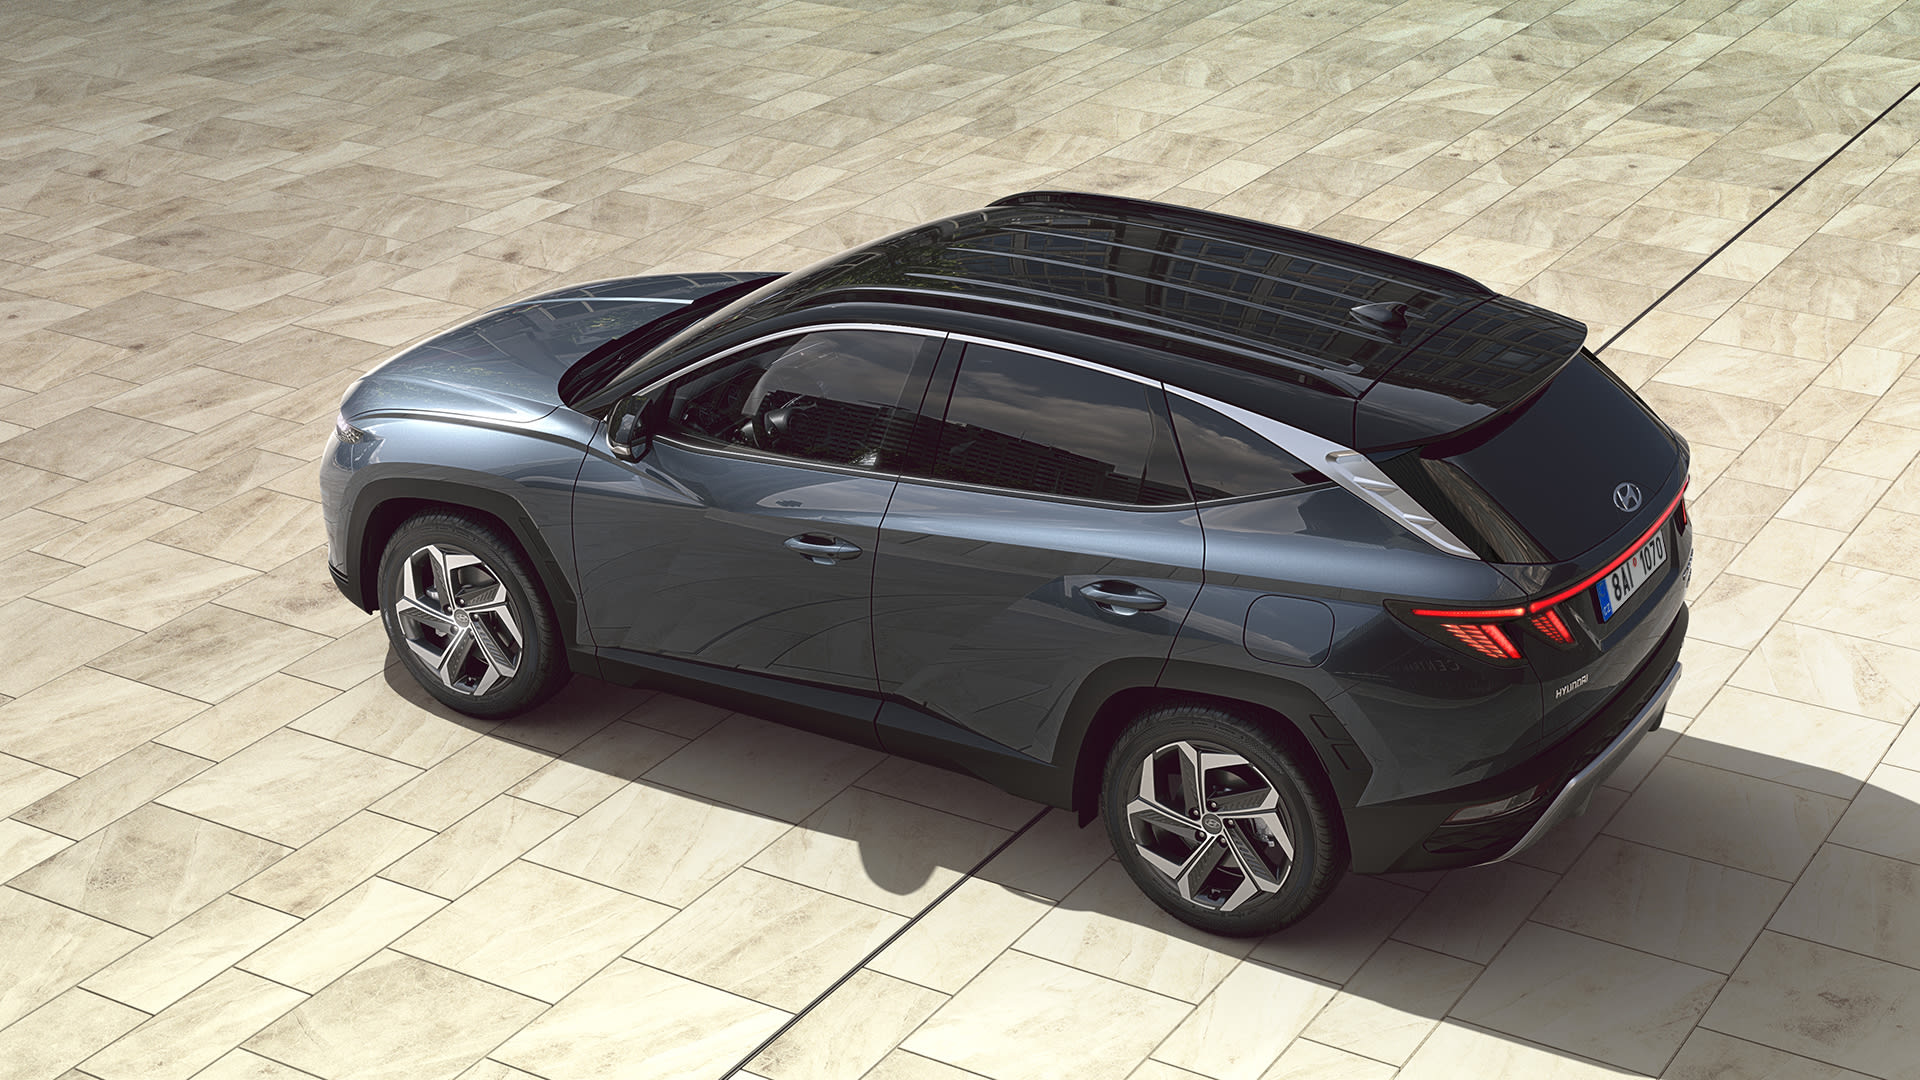 Nový Hyundai Tucson právě v prodeji